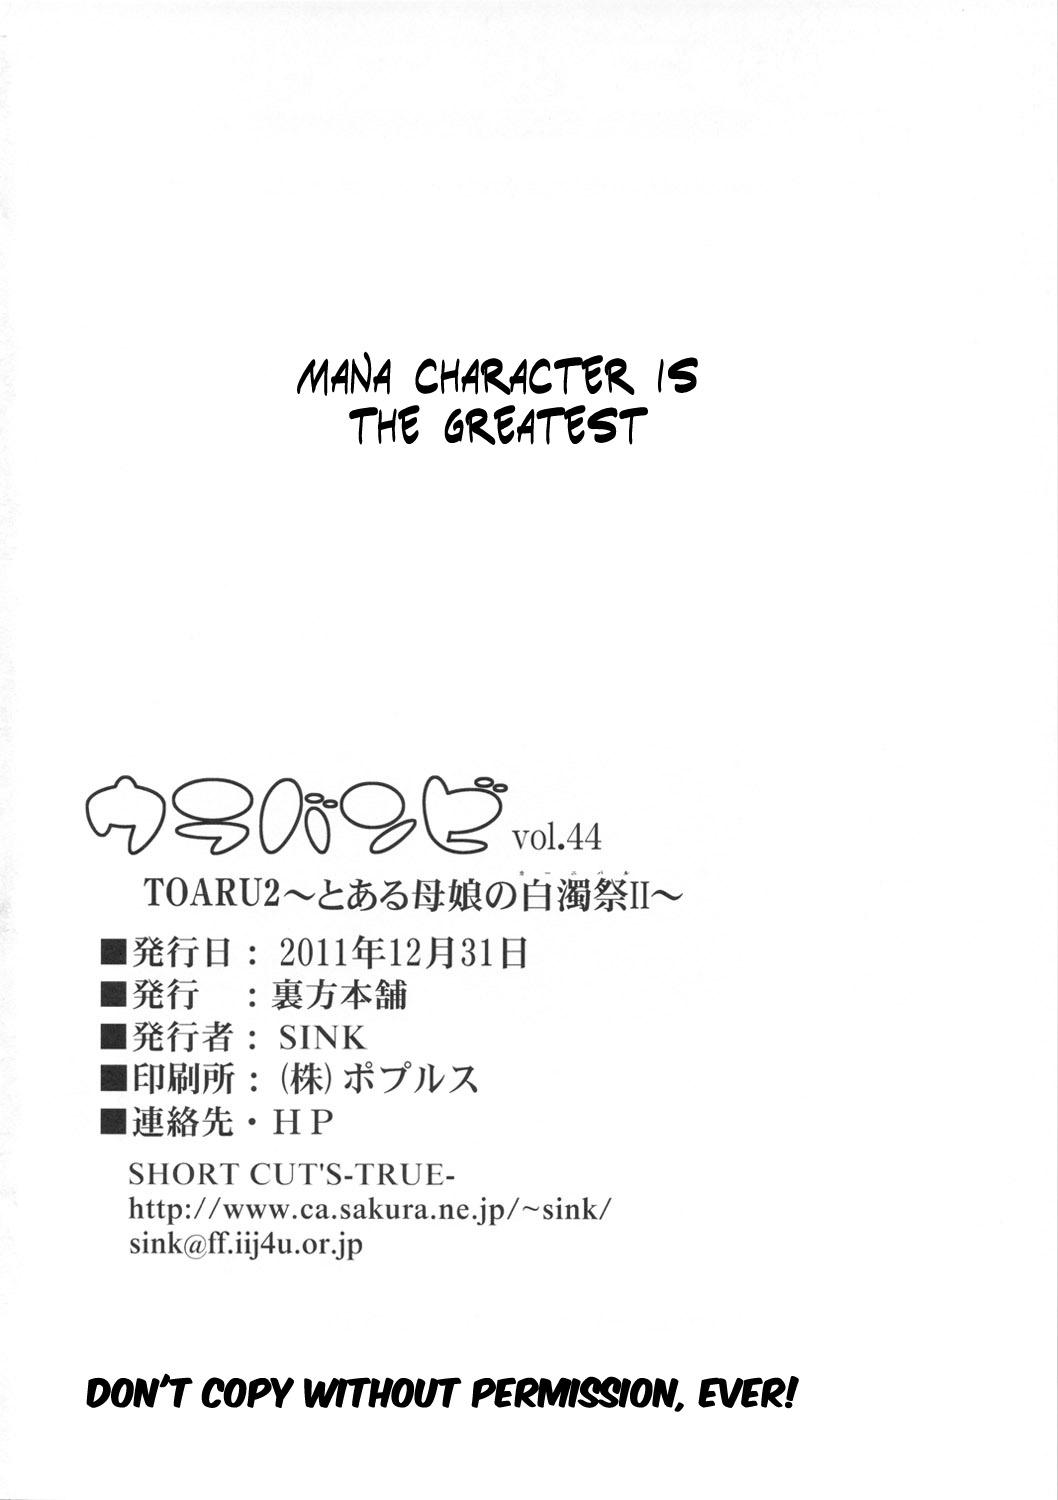 Bound Urabambi Vol. 44 TOARU 2 - Toaru kagaku no railgun Toaru majutsu no index Couch - Page 25